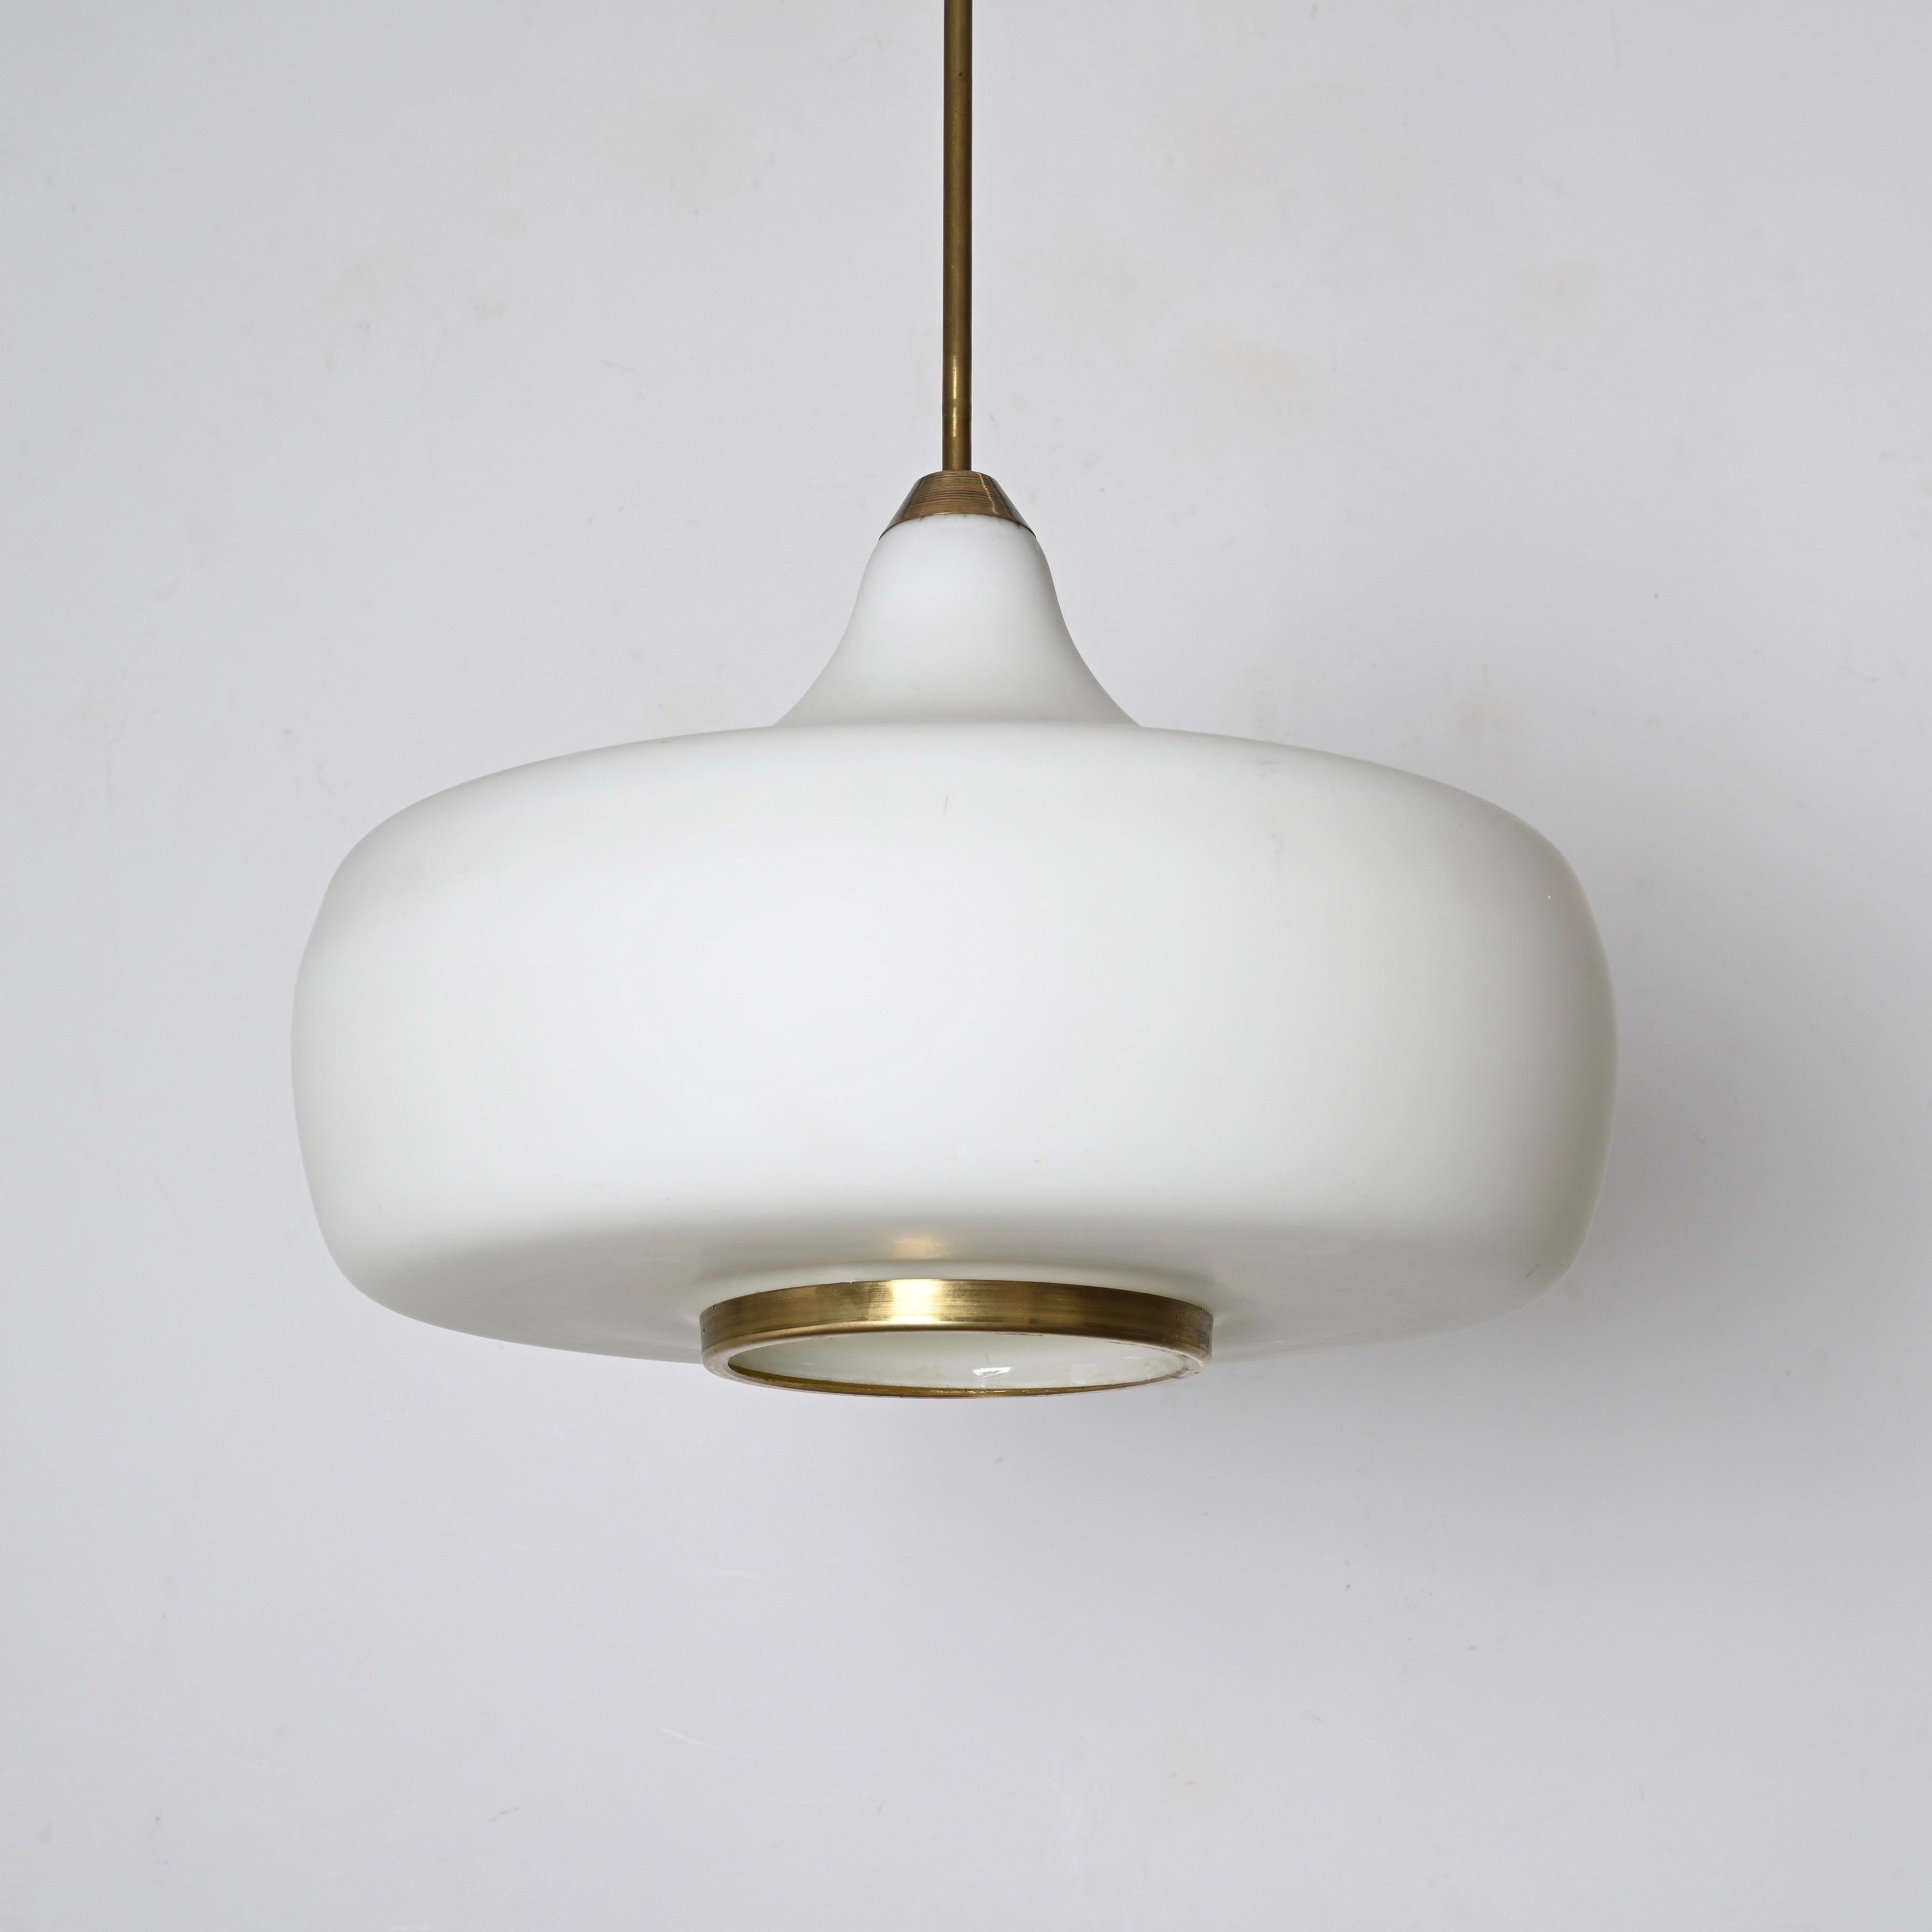 Enameled Stilnovo Opal Glass and Brass Chandelier Ceiling Lamp, Italian Lighting 1960s For Sale